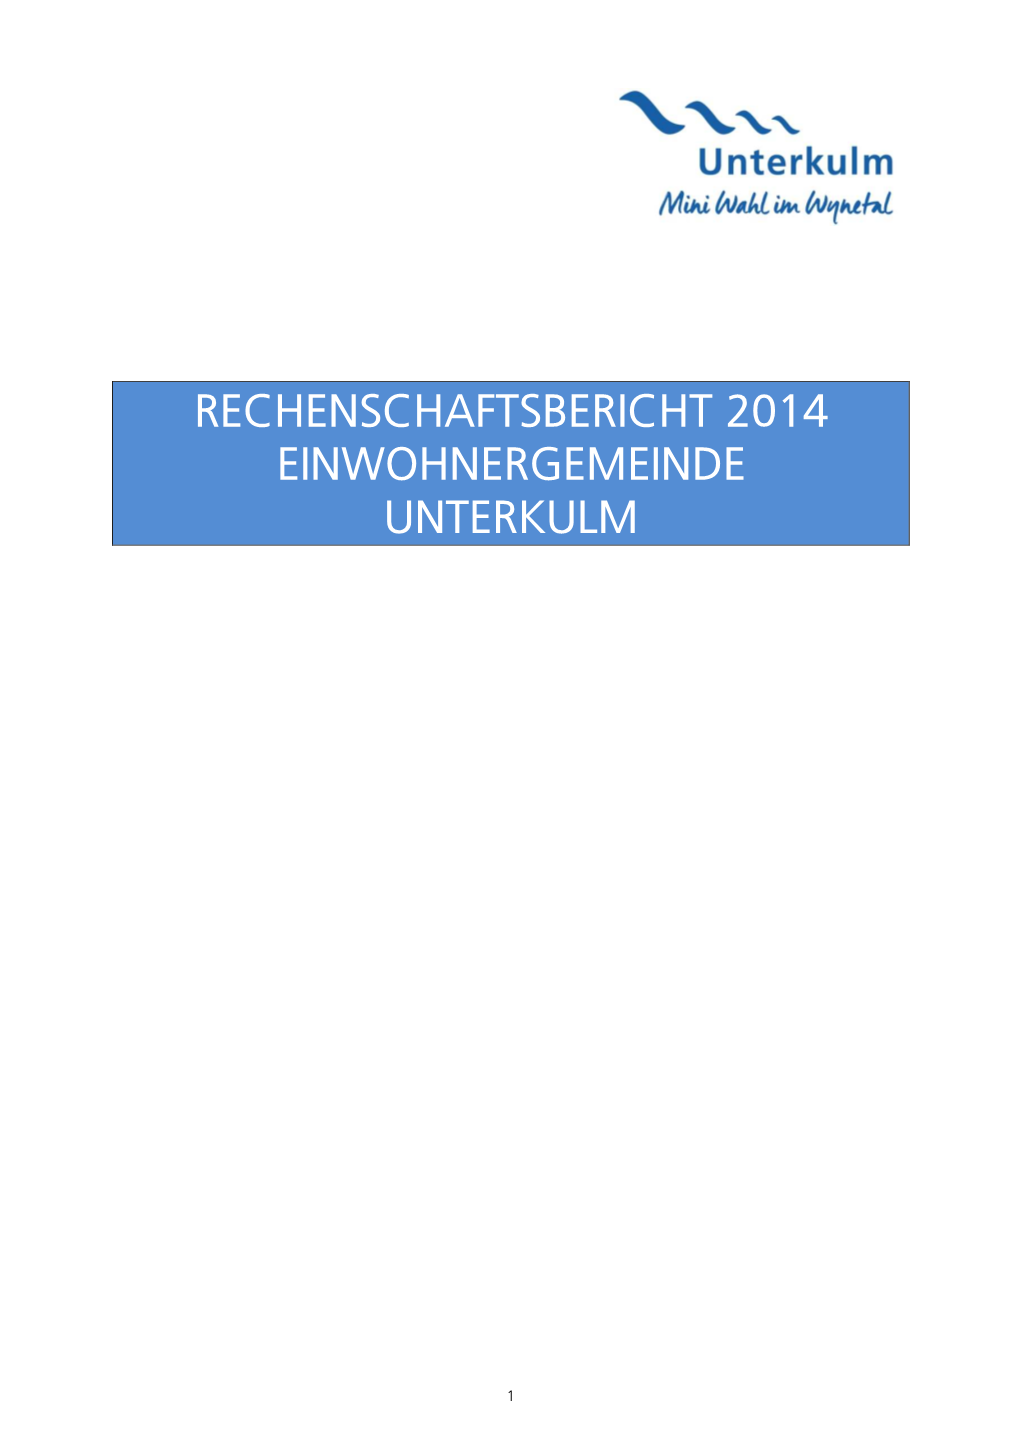 Rechenschaftsbericht 2014 Einwohnergemeinde Unterkulm